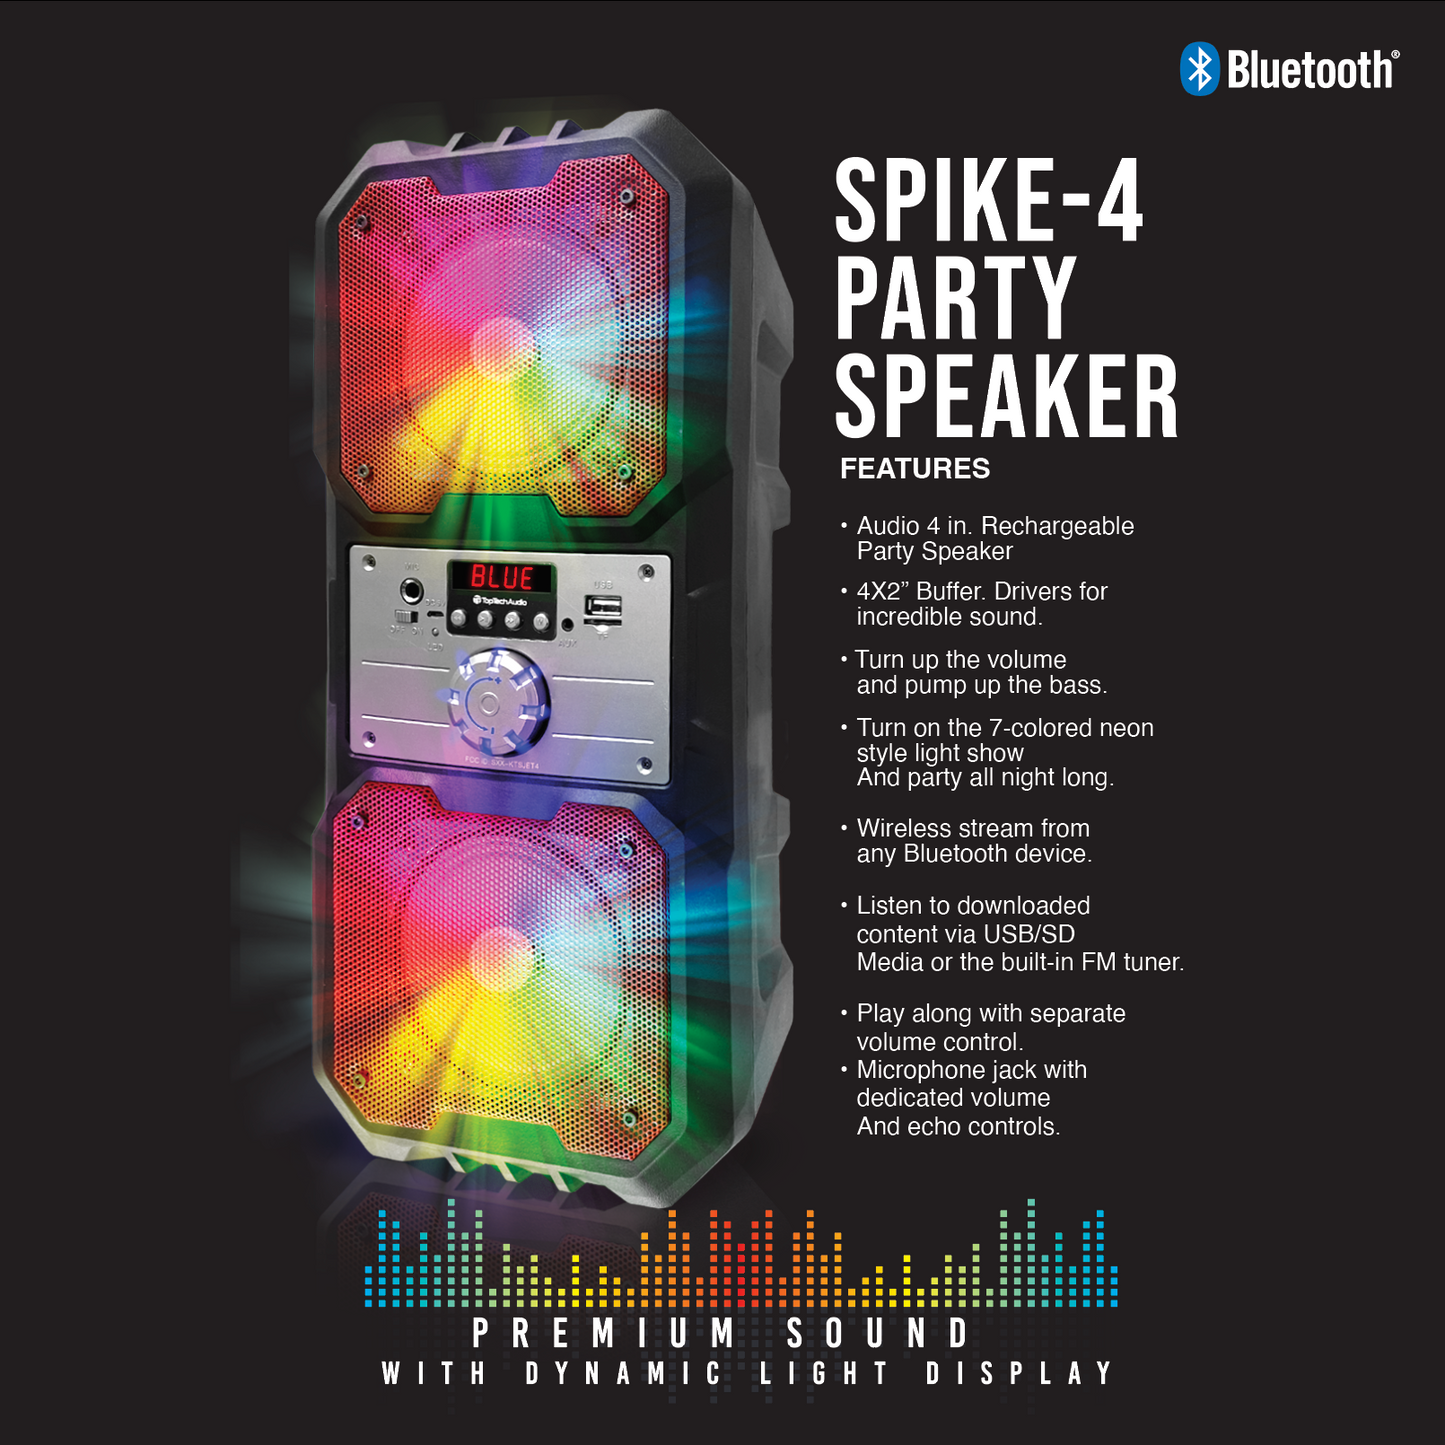 SPIKE-4 Party Speaker